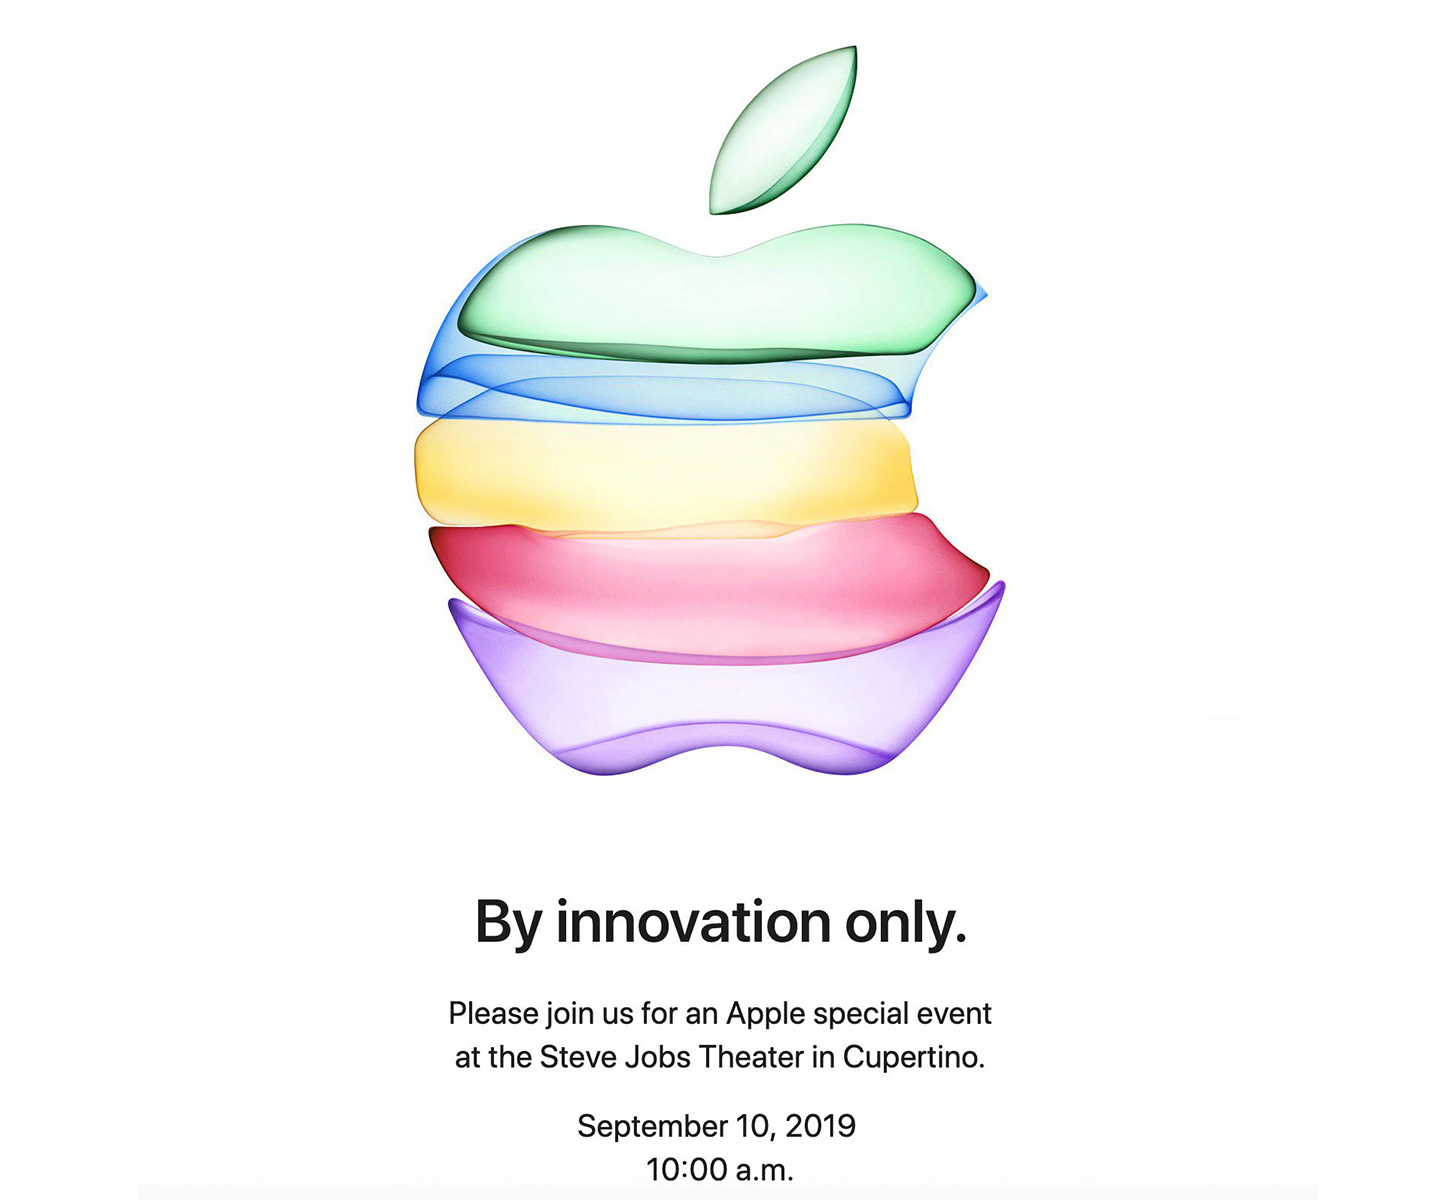 AppleНовое событие iPhone происходит 10 сентября